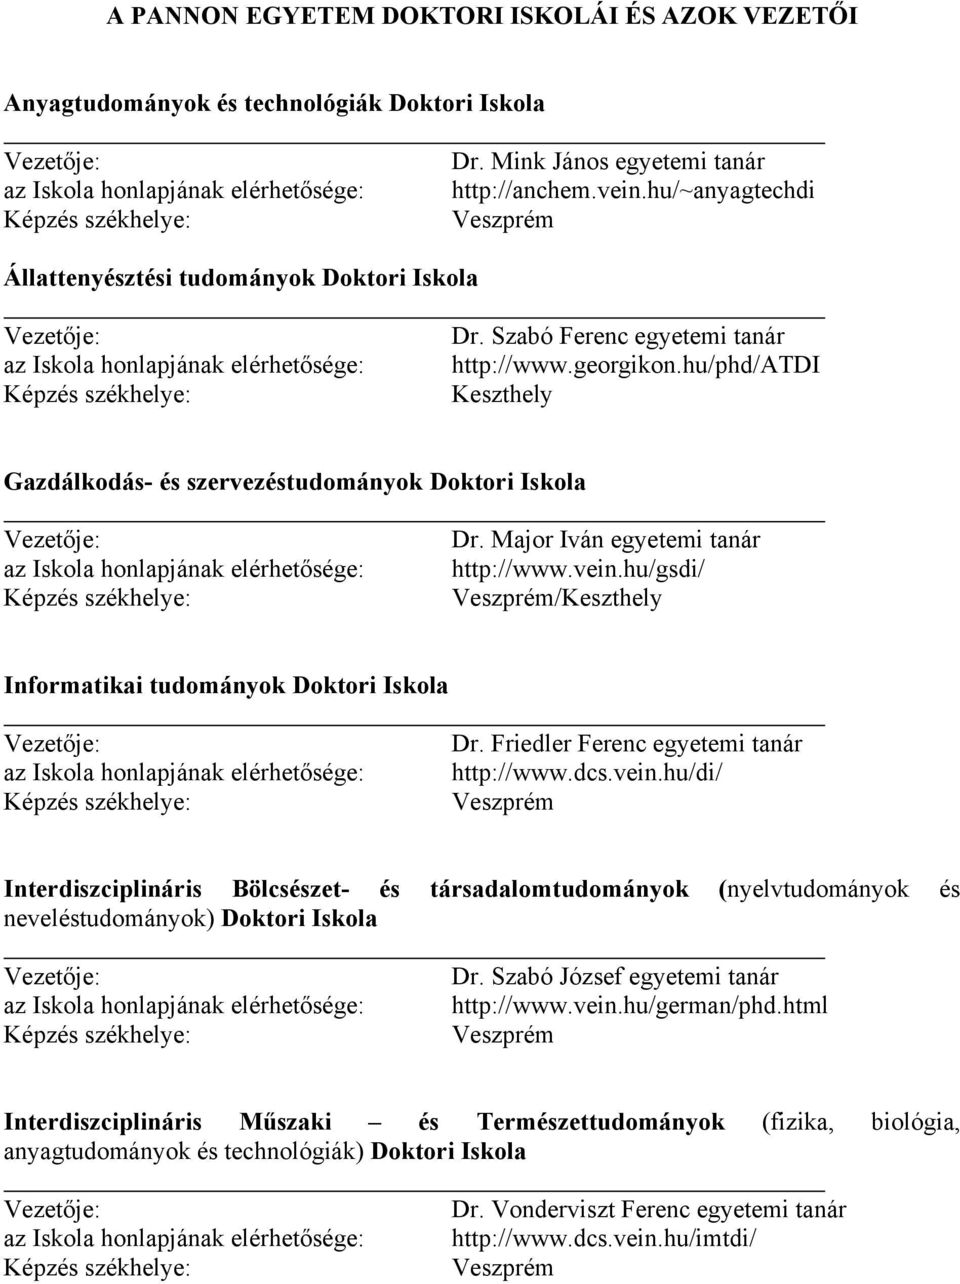 PÁLYÁZATI FELHÍVÁS. a PANNON EGYETEM Doktori képzésébe való részvételre.  2007/2008 tanév - PDF Free Download